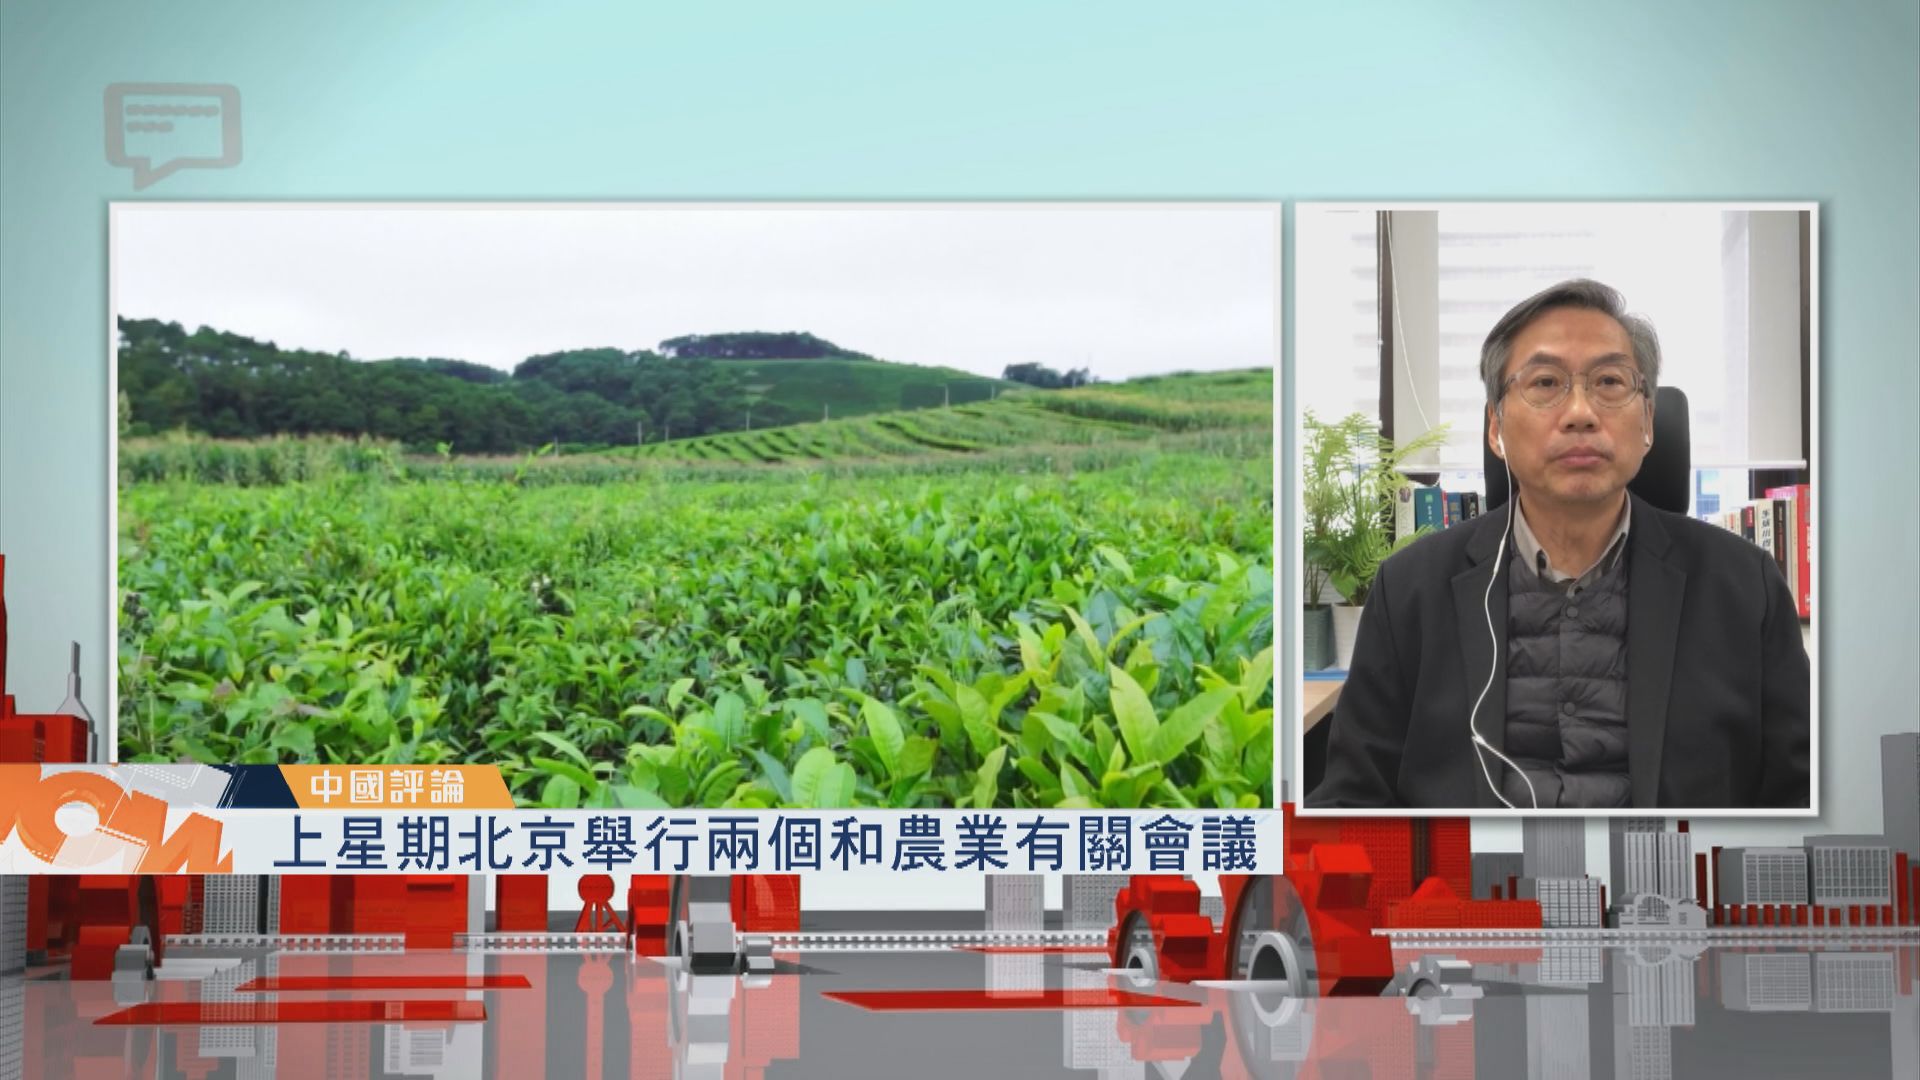 【中國評論】北京舉行兩個和農業有關會議